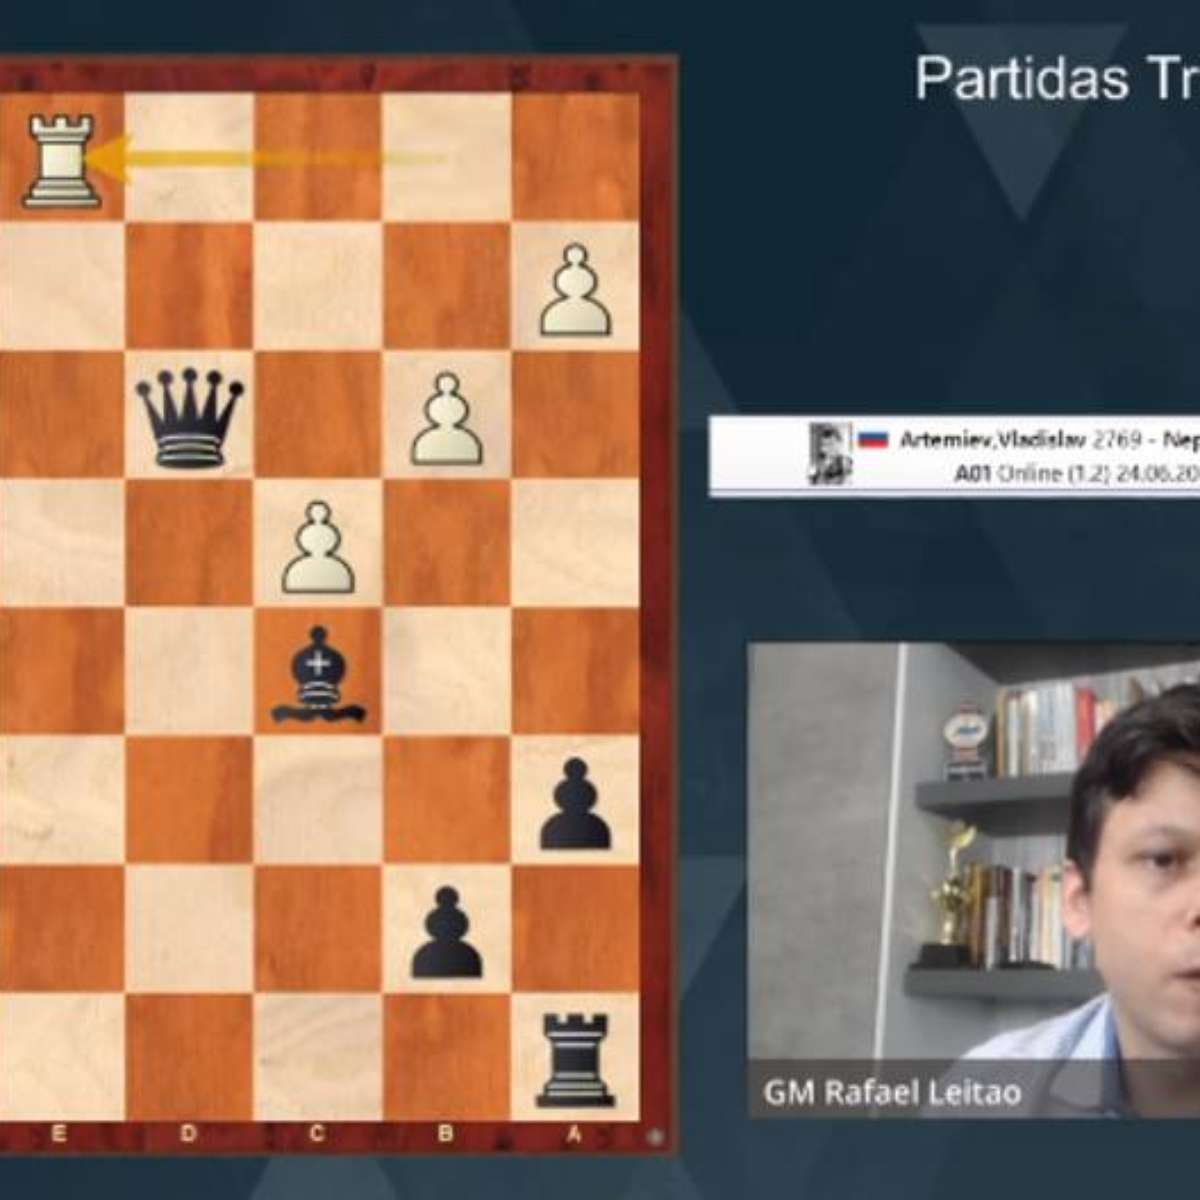 Jogo de Xadrez: Dois homens estão jogando xadrez. Eles já jogaram 5 jogos